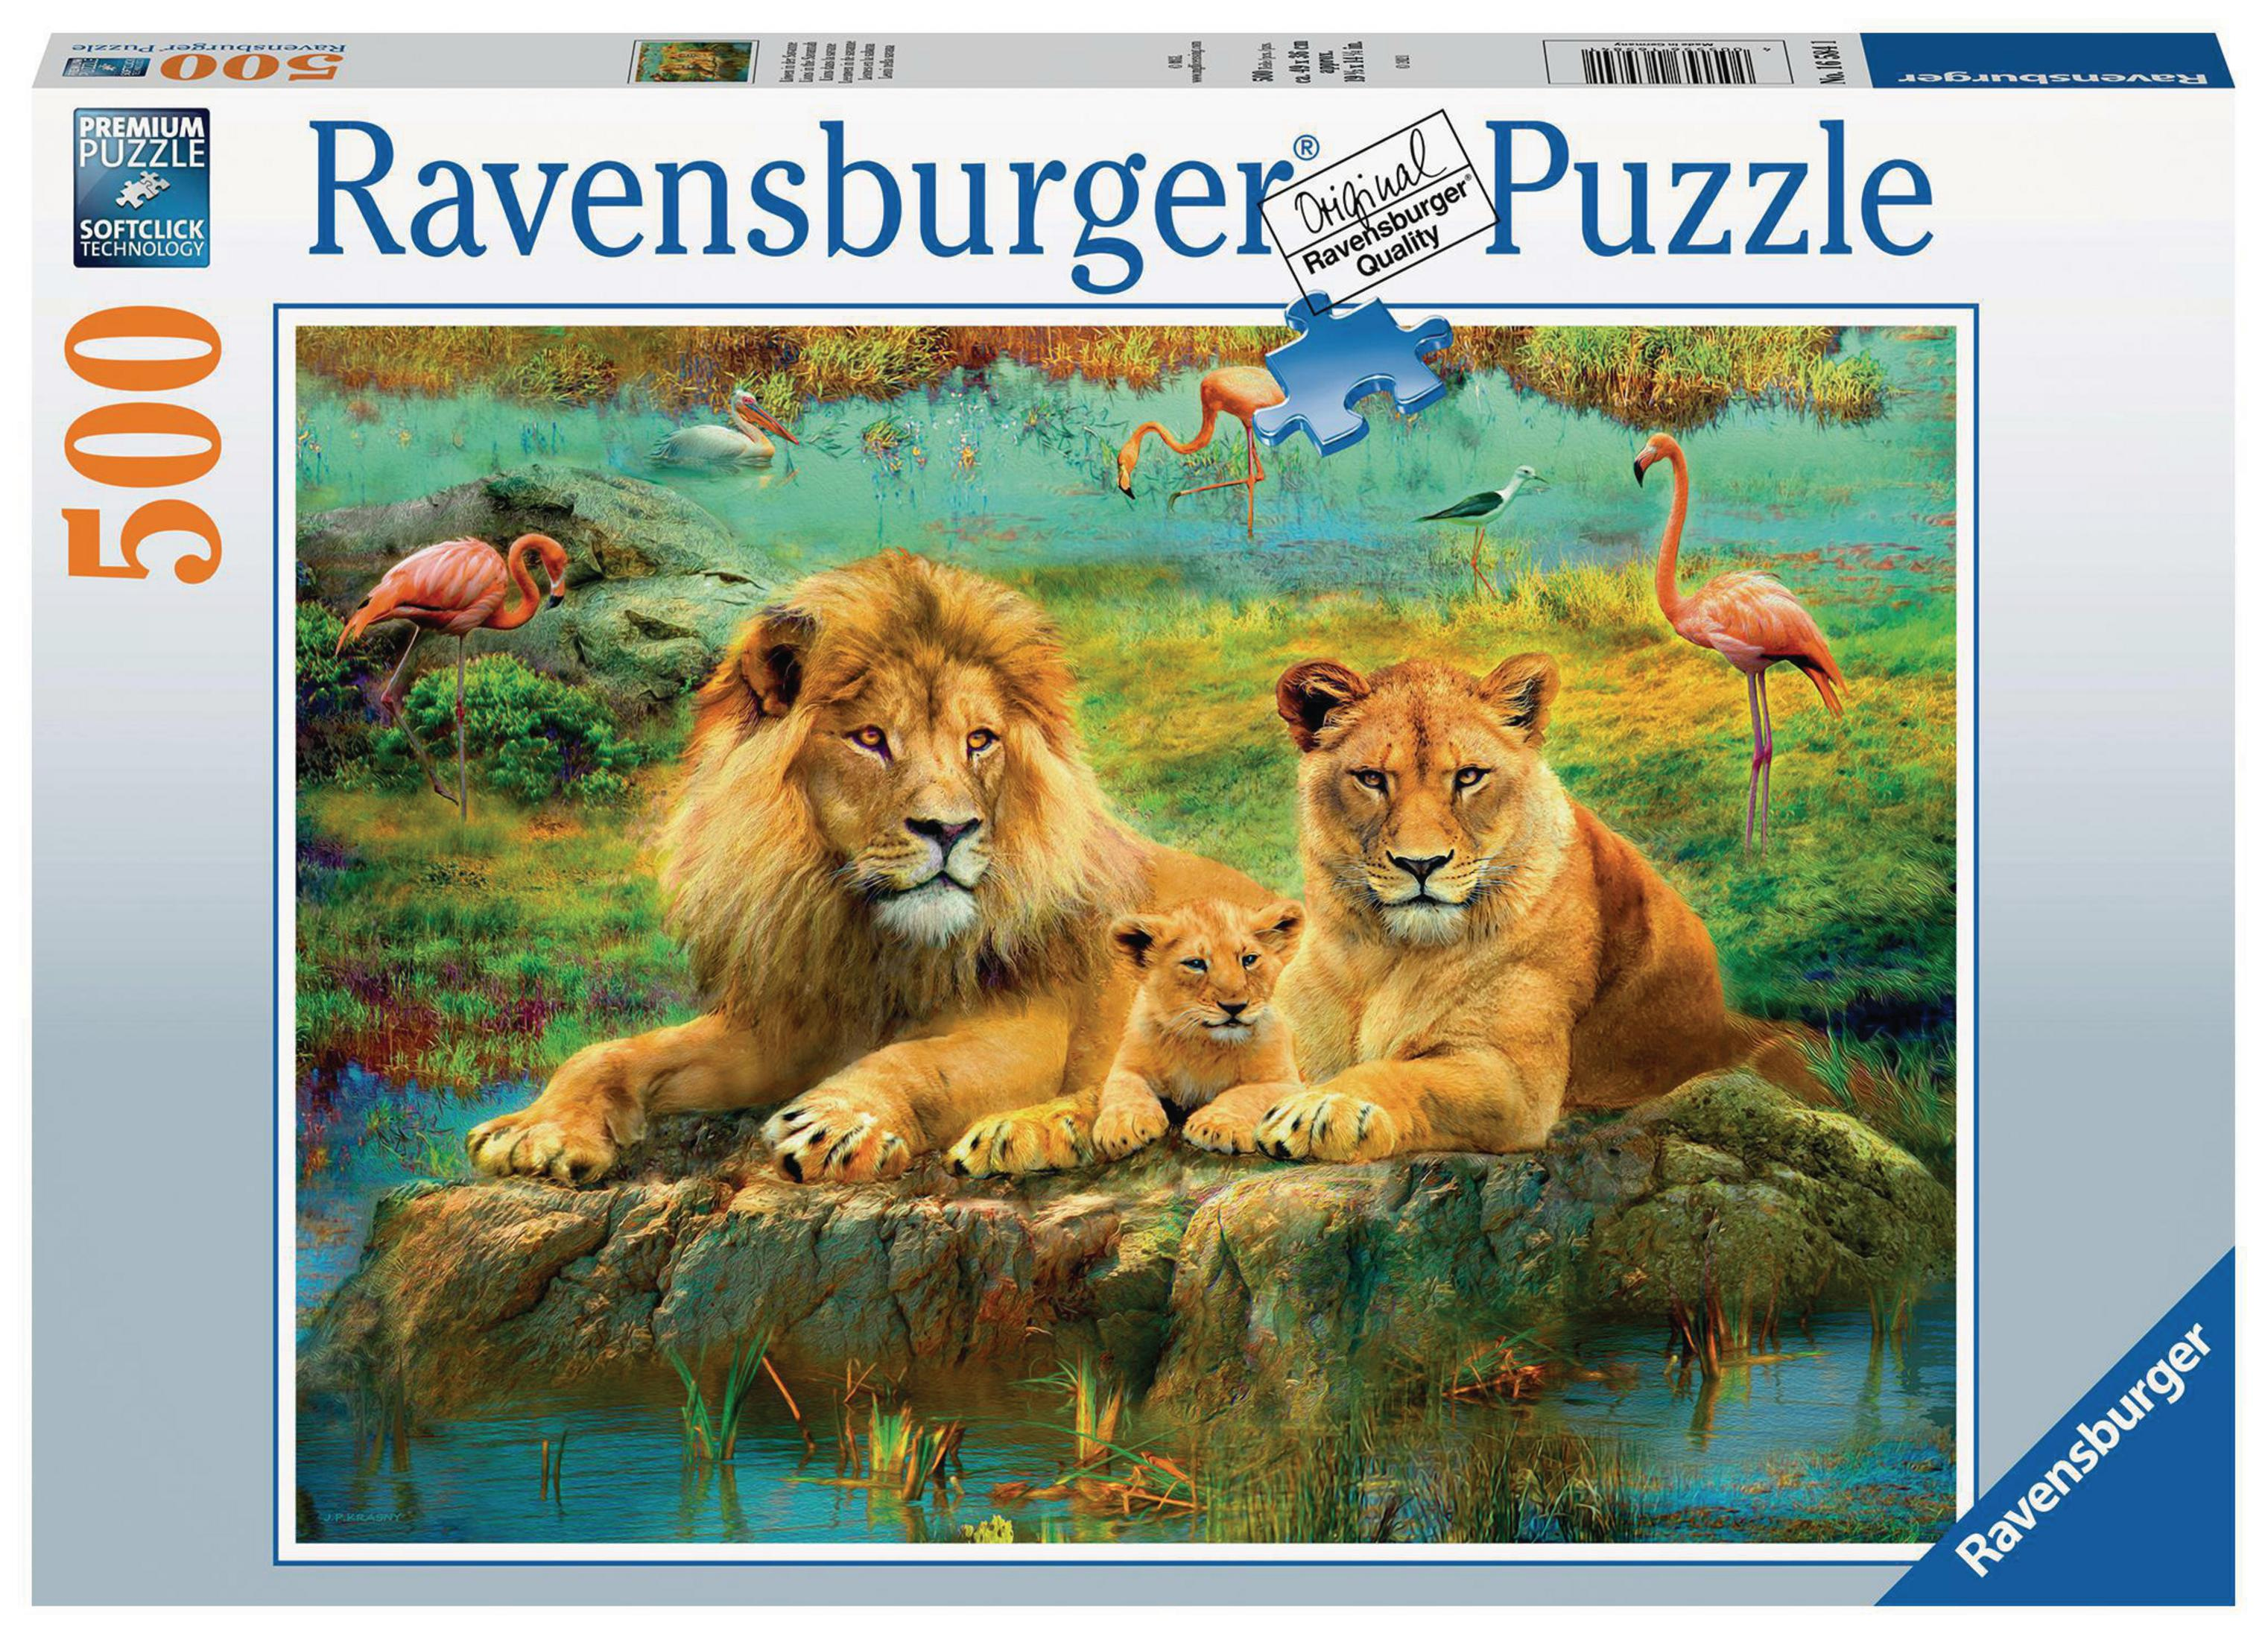 RAVENSBURGER 16584 Puzzle IN DER LÖWEN SAVANNE